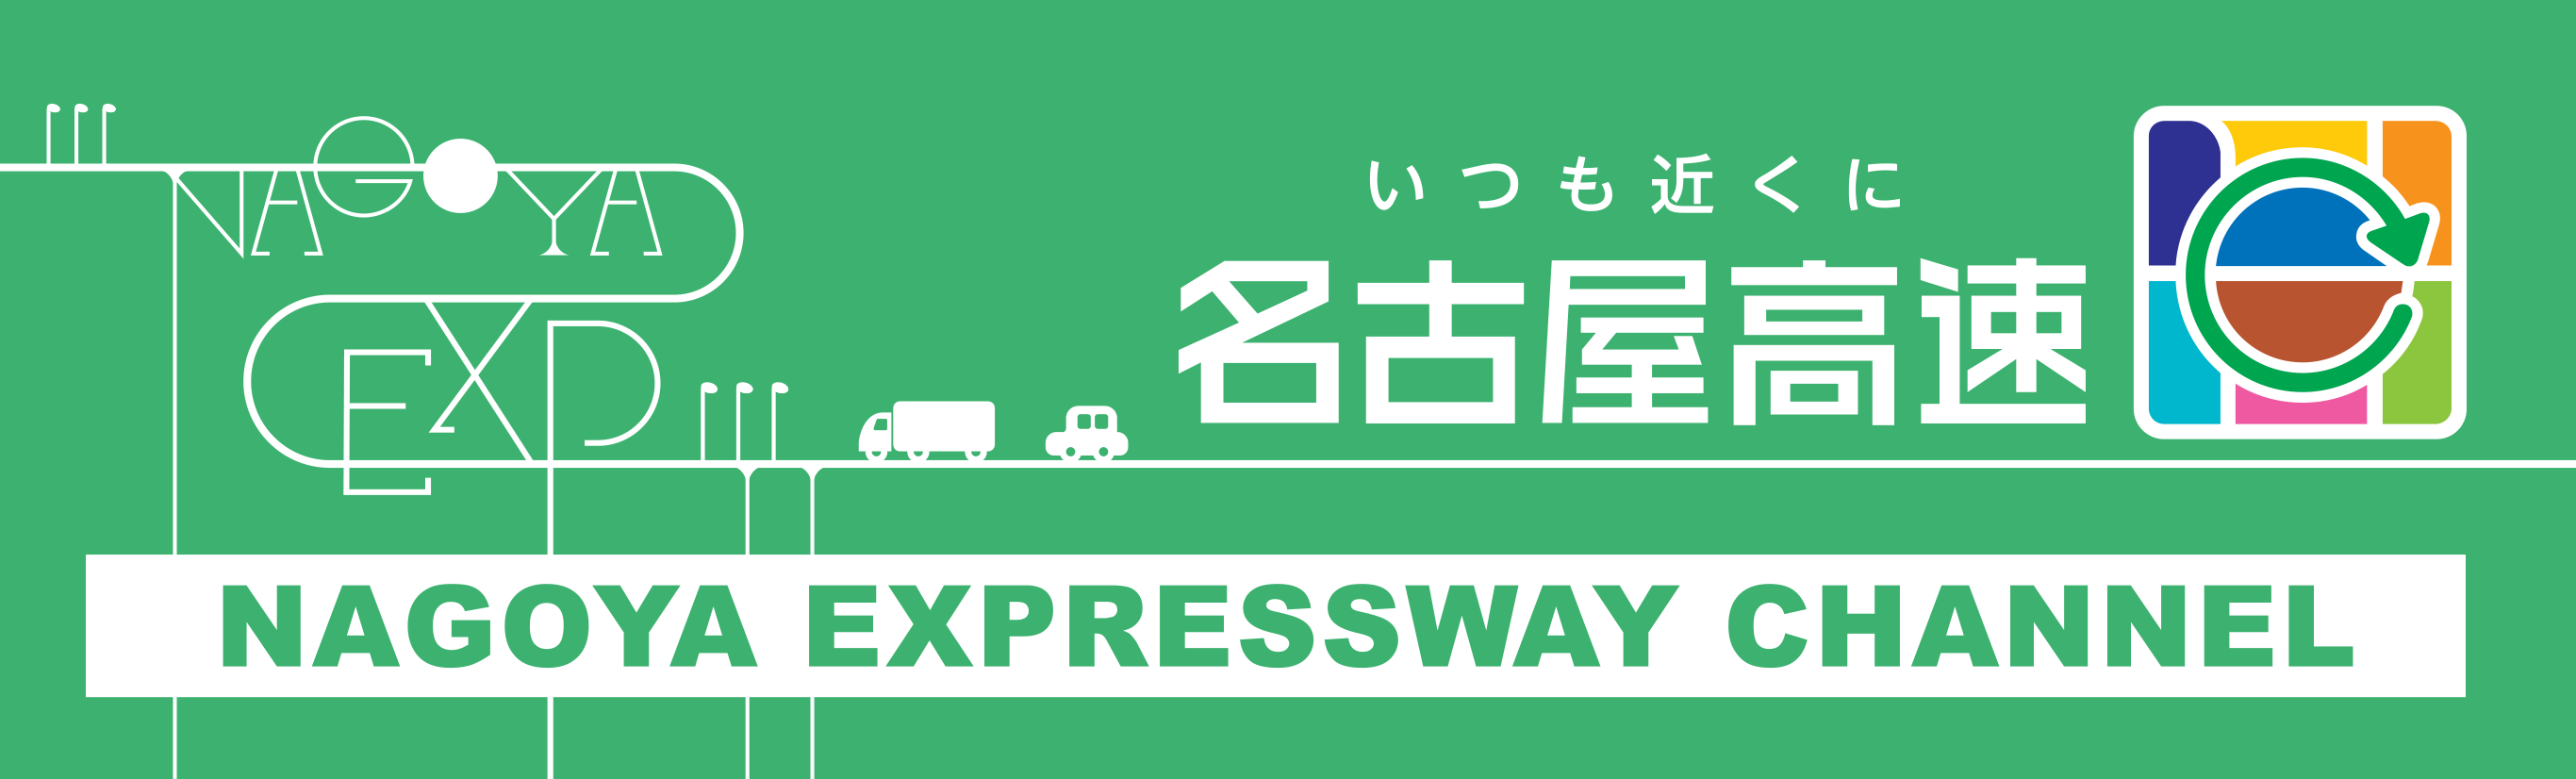 いつも近くに 名古屋高速 NAGOYA EXPRESSWAY CHANNEL